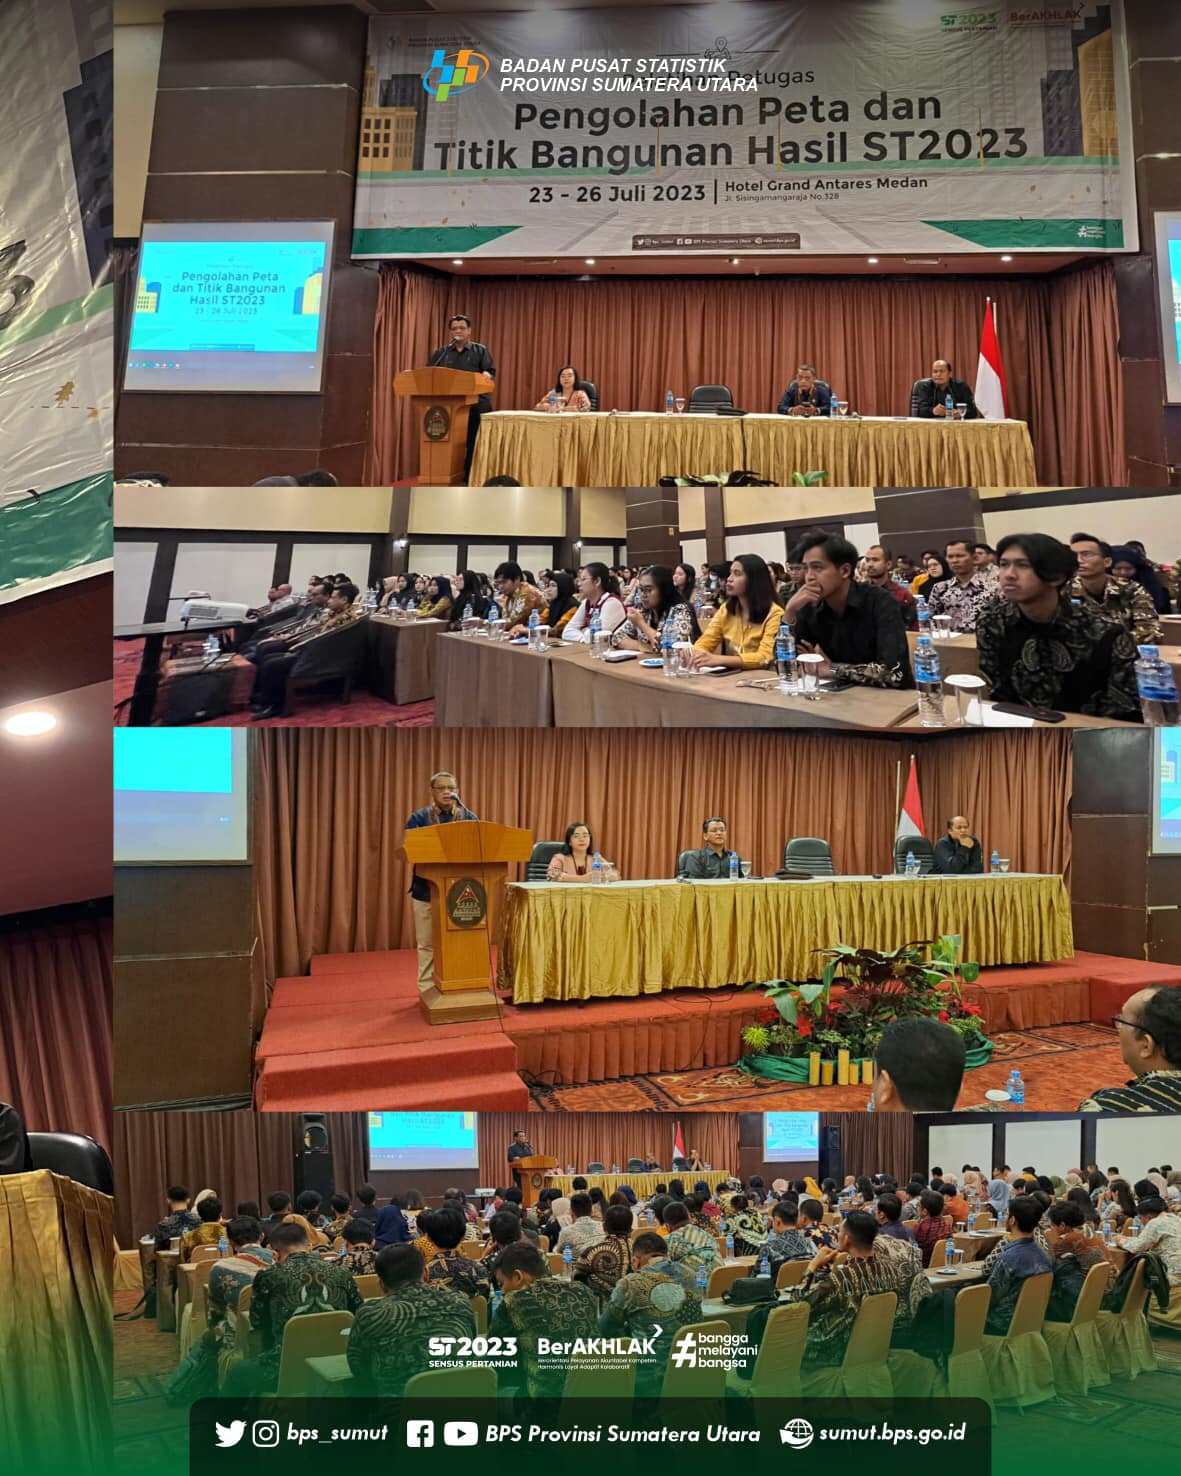 Pelatihan Petugas Pengolahan Peta dan Titik Bangunan Hasil ST2023 Provinsi Sumatera Utara